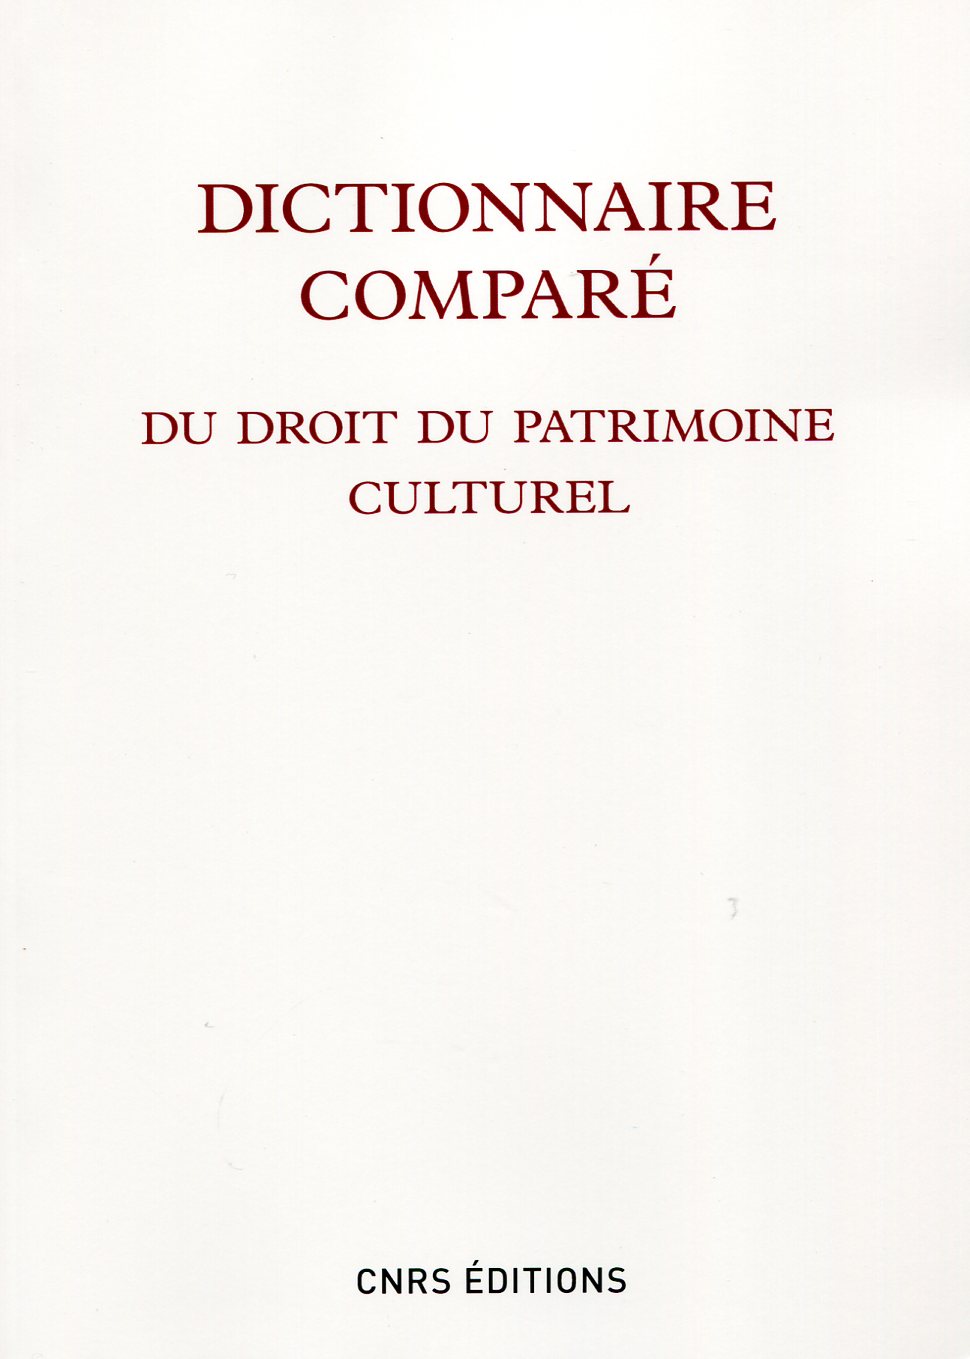 ÉPUISÉ - Dictionnaire comparé du droit du patrimoine culturel, 2012, 1023 p.